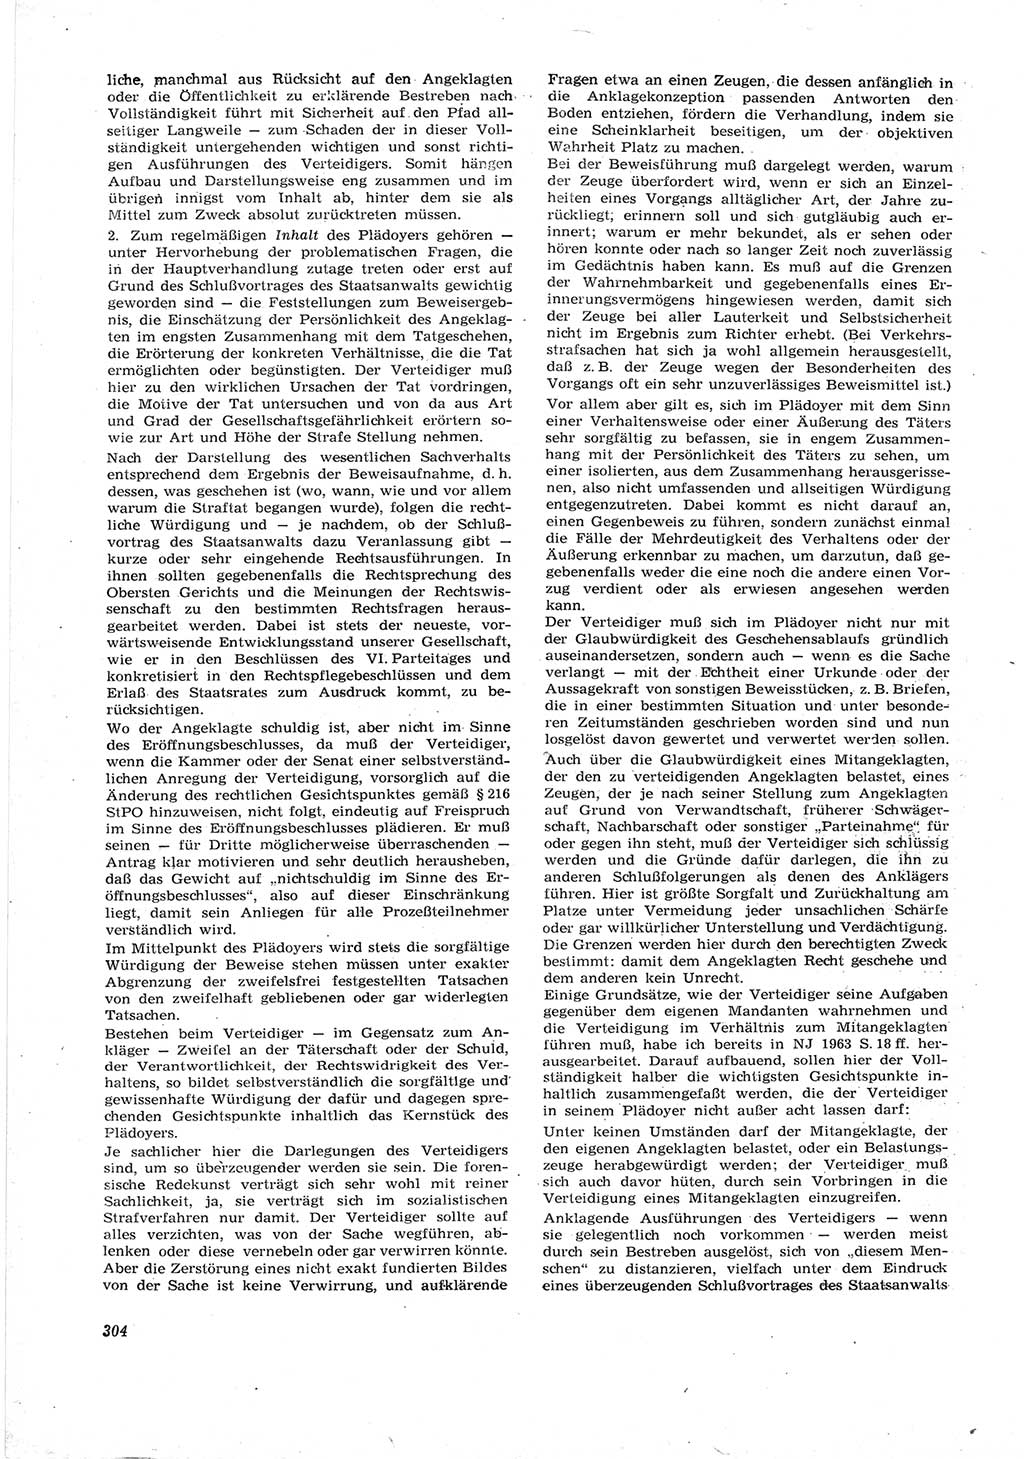 Neue Justiz (NJ), Zeitschrift für Recht und Rechtswissenschaft [Deutsche Demokratische Republik (DDR)], 17. Jahrgang 1963, Seite 304 (NJ DDR 1963, S. 304)